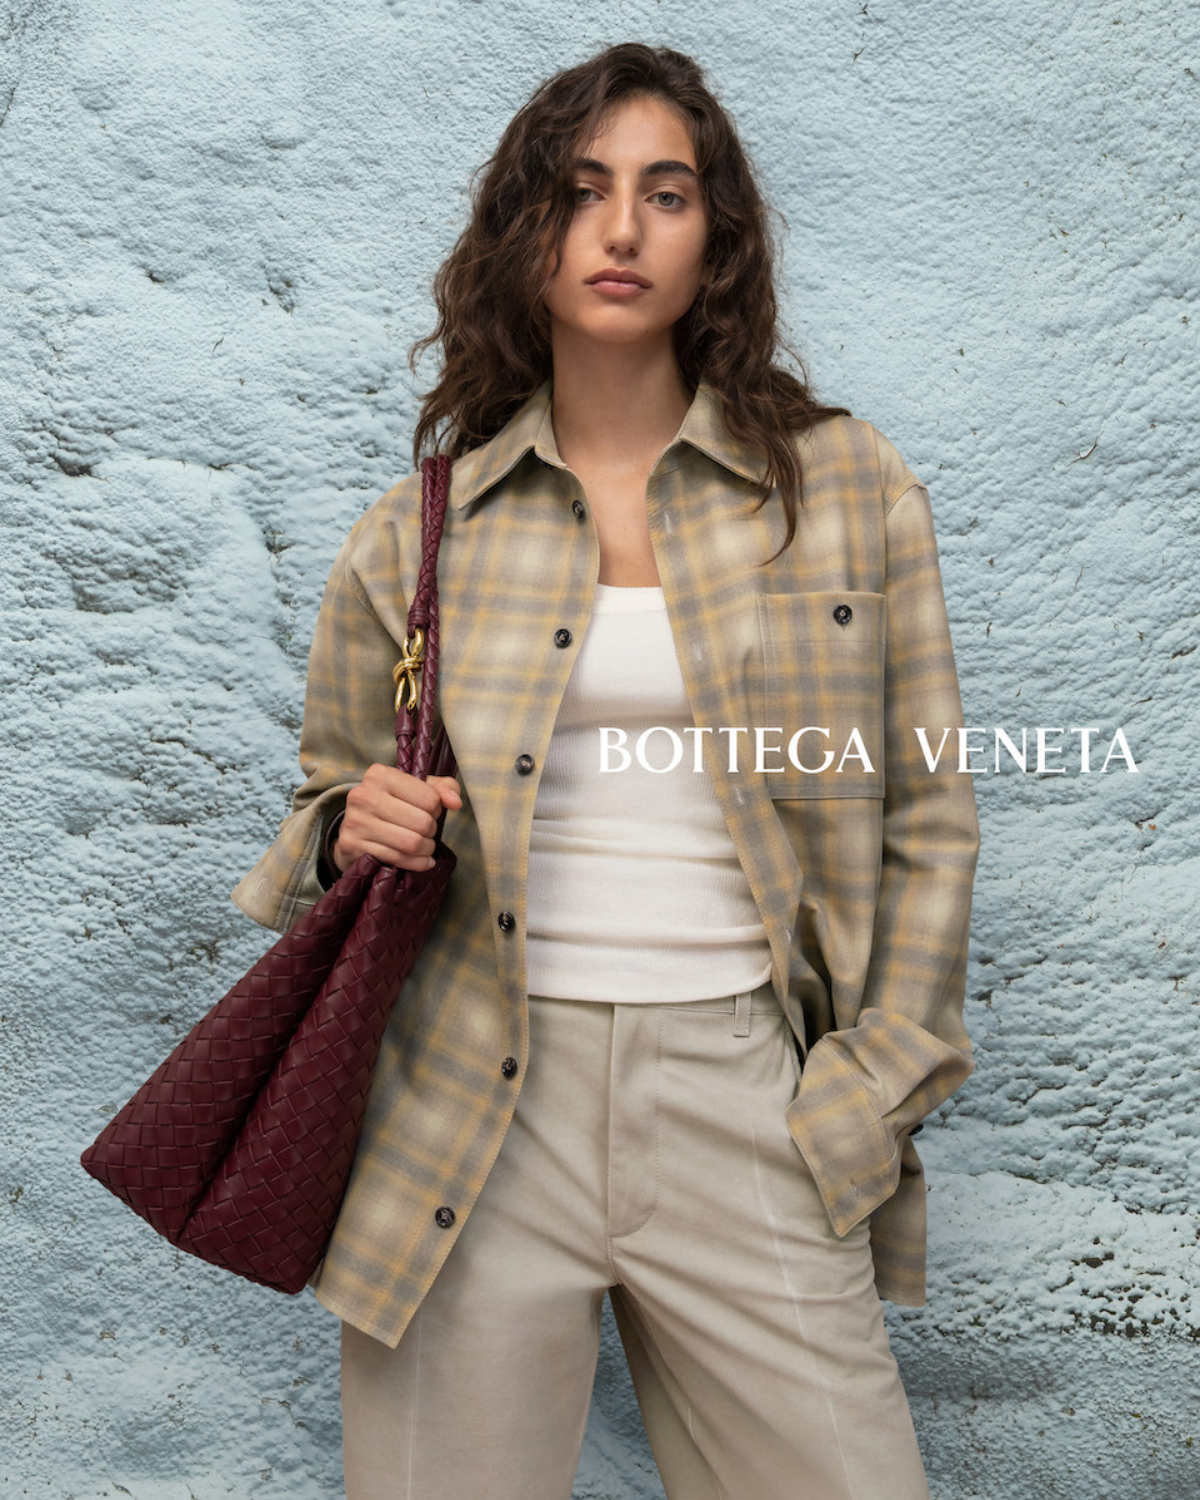 ボッテガ・ヴェネタ」がマチュー・ブレイジーによる新バッグ